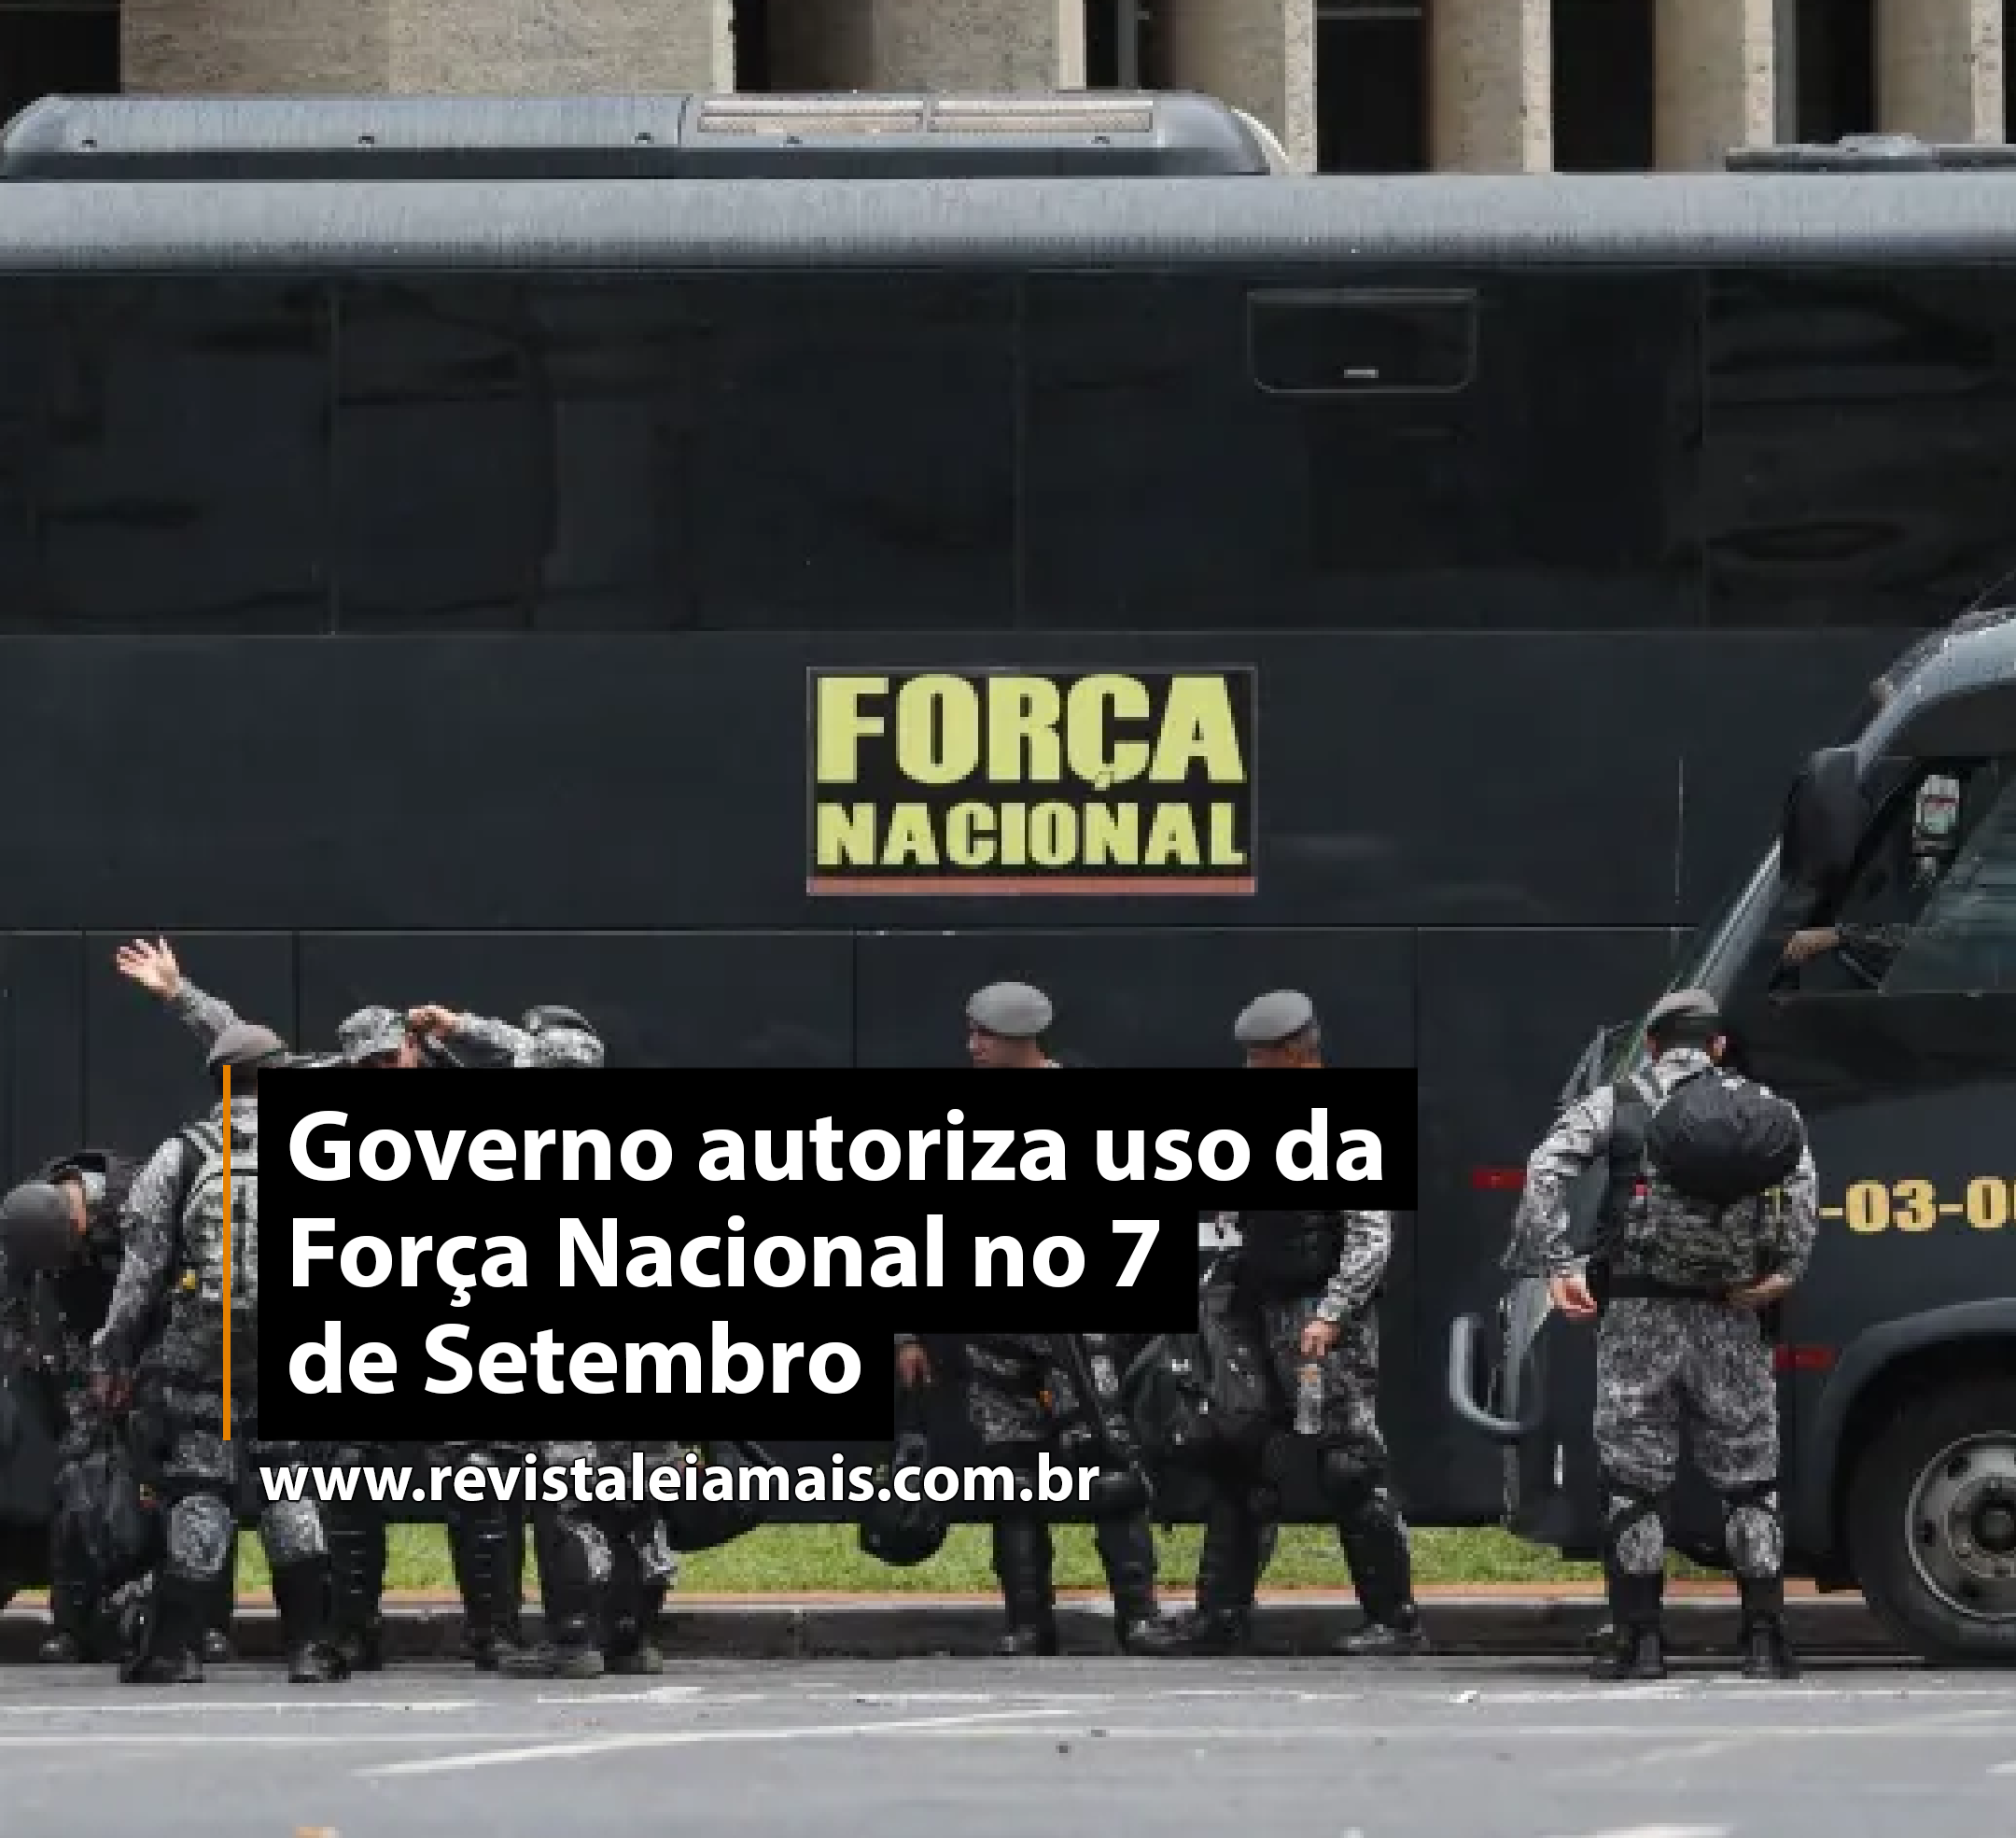 Governo autoriza uso da Força Nacional no 7 de Setembro